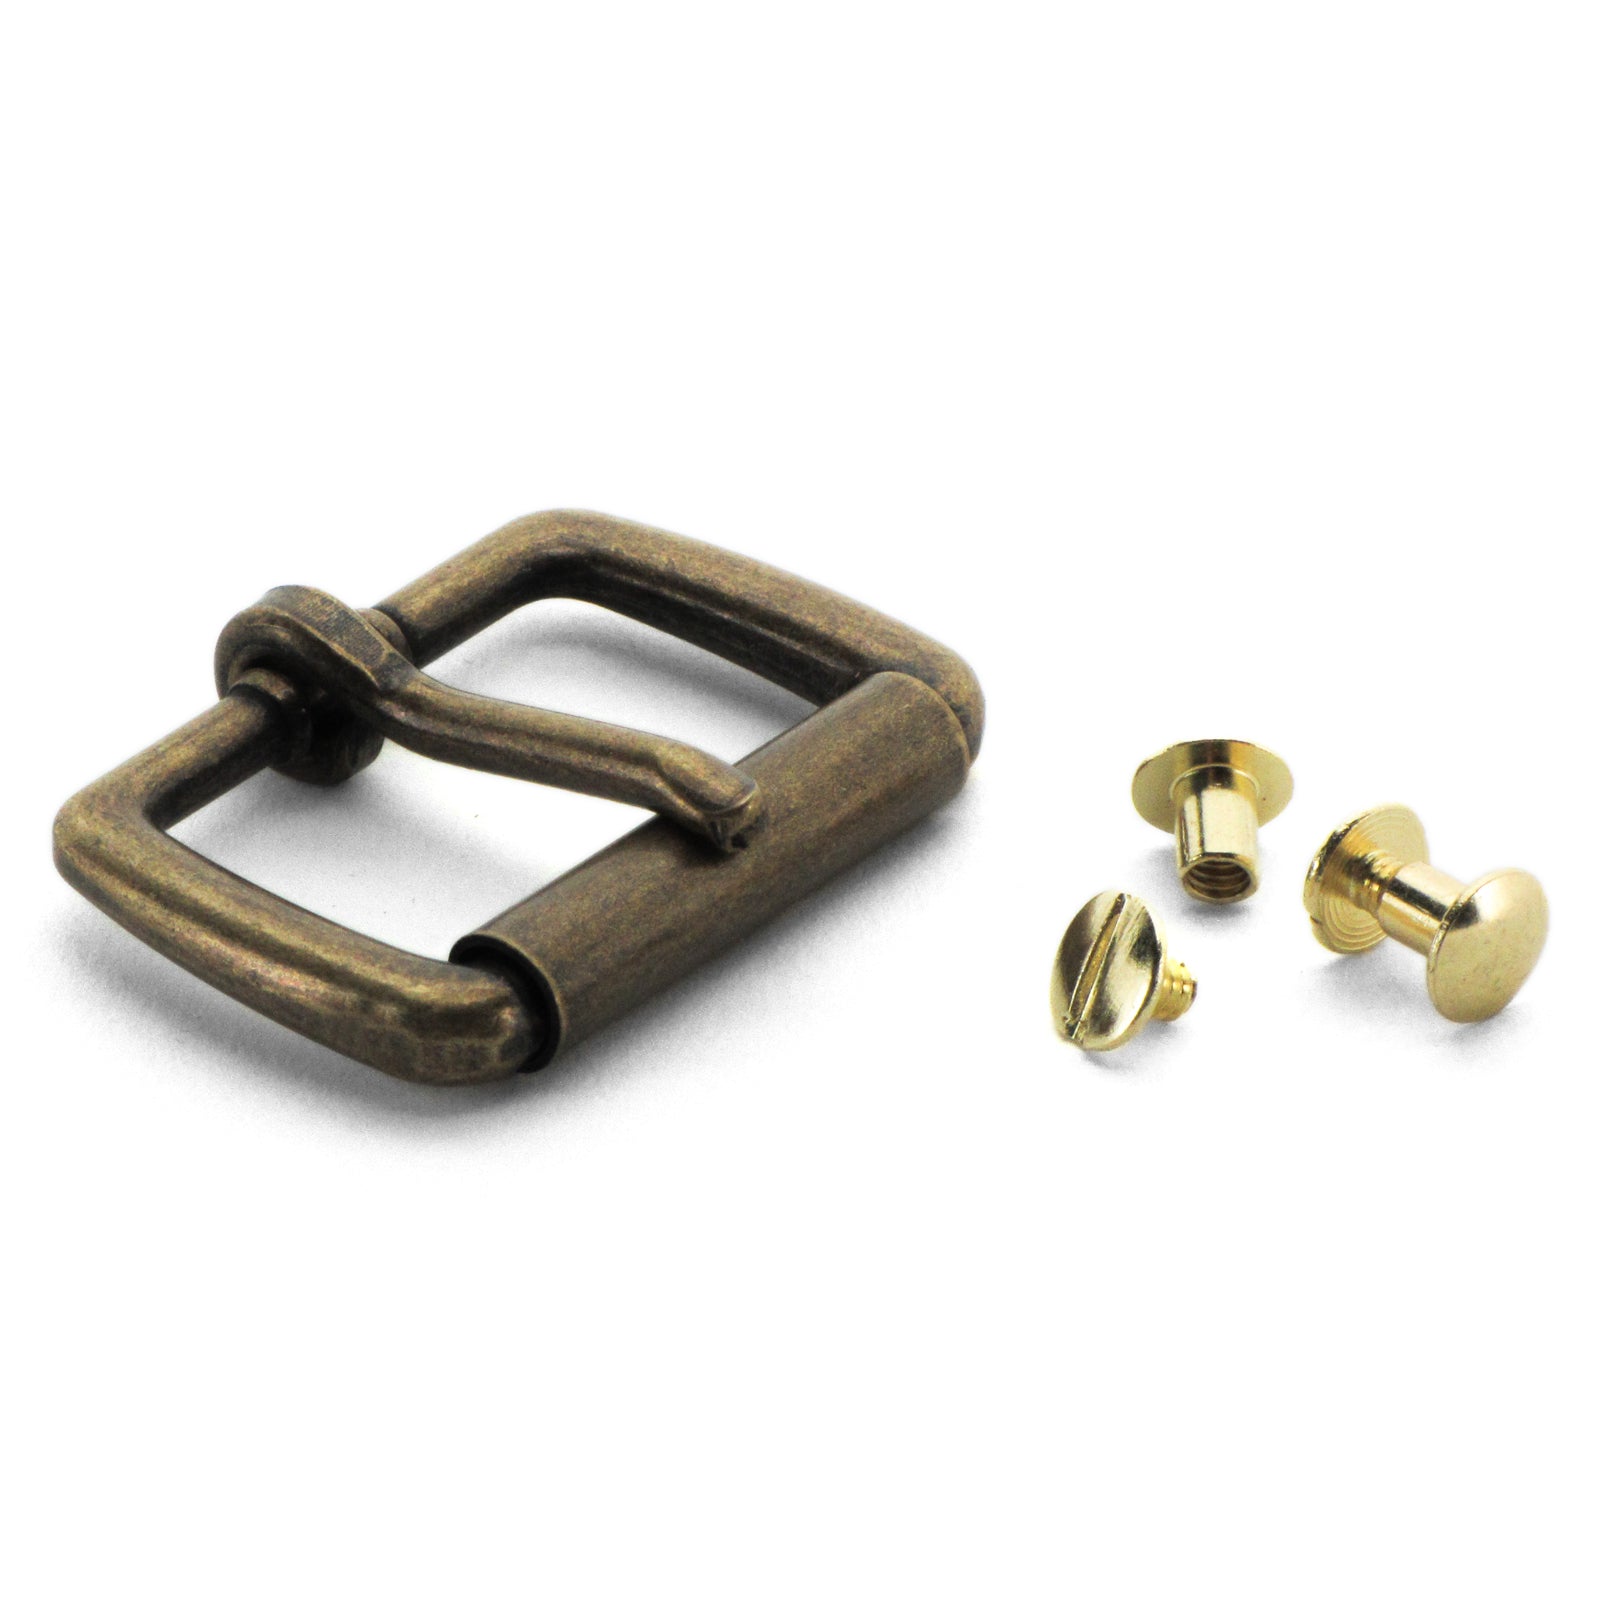 https://www.thebeltman.net/cdn/shop/products/gun-belt-buckle-antique-brass-roller-with-chicago-screws.jpg?v=1506381749